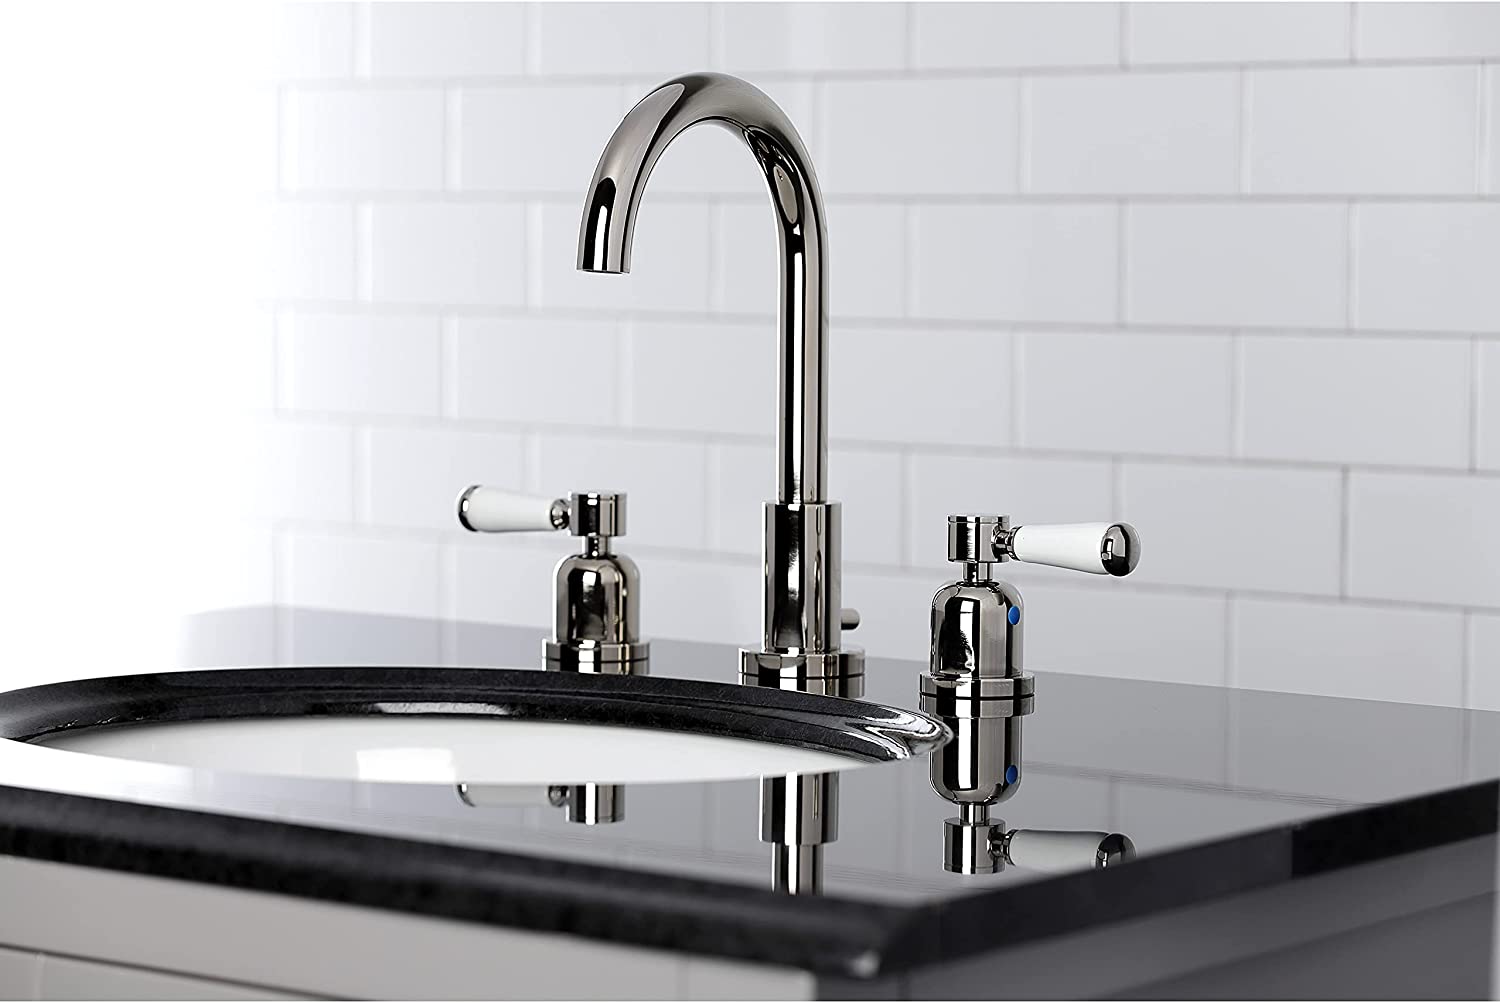 Kingston Brass FSC8929DPL Paris Widespread Bathroom Faucet, 5-3/8 Inch in Spout Reach, Polished Nickel